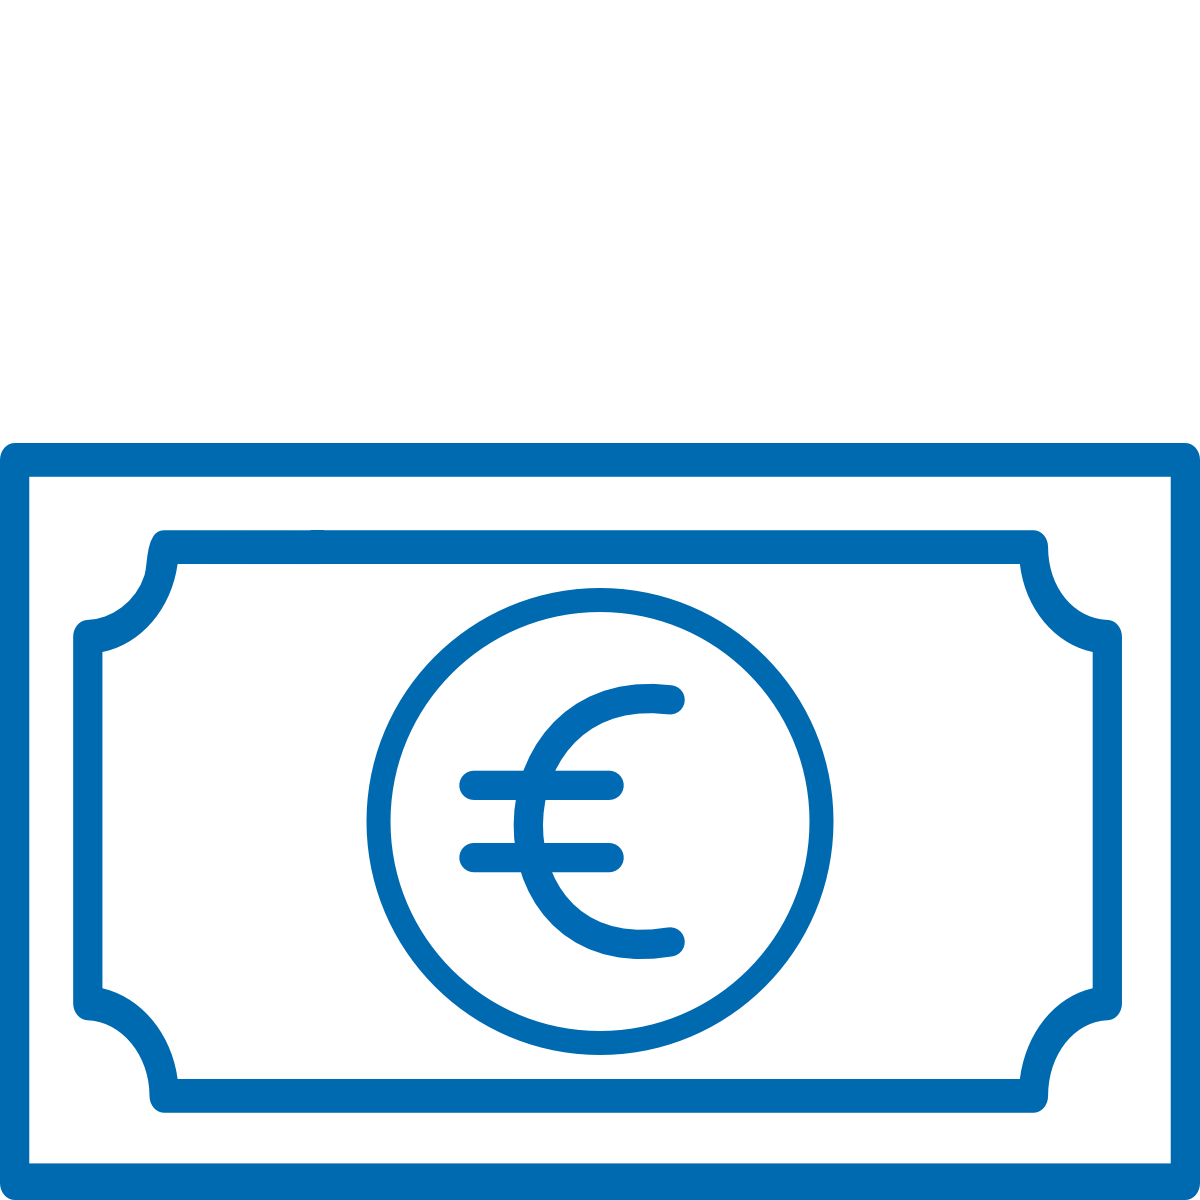 Icon of a euro bill